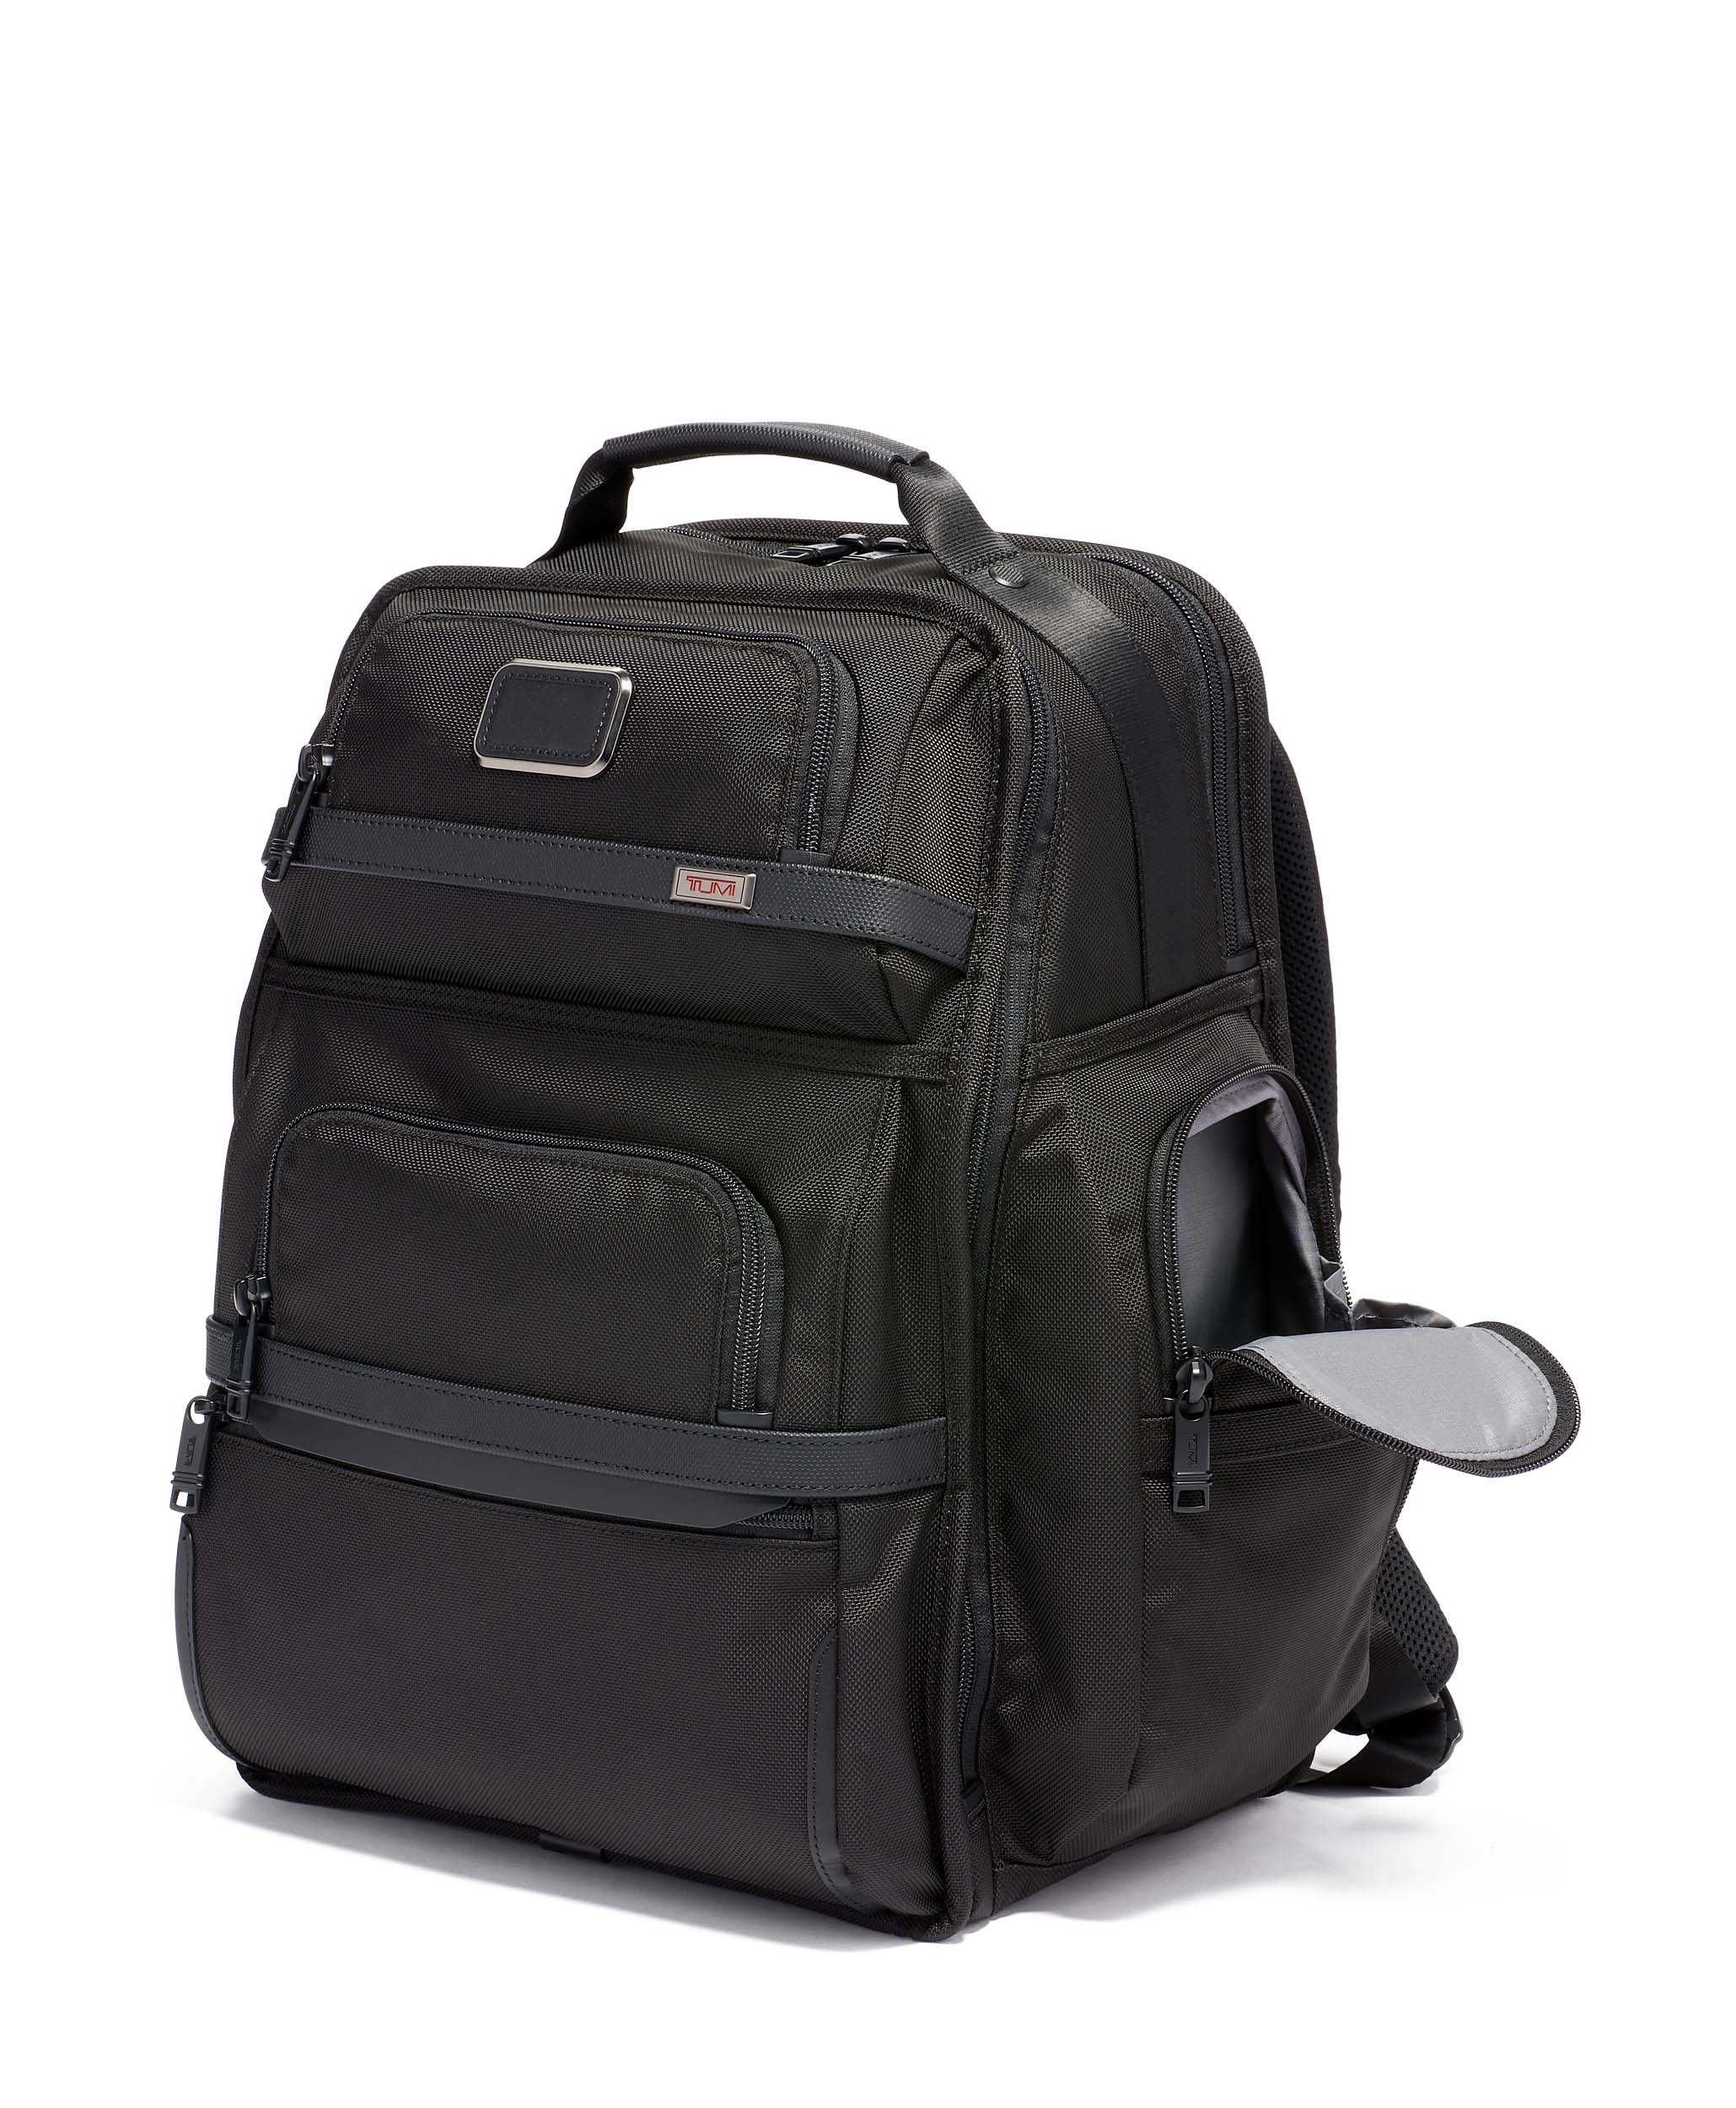 Рюкзак Tumi Alpha 3 Backpack! Новый с бирками! Оригинал!